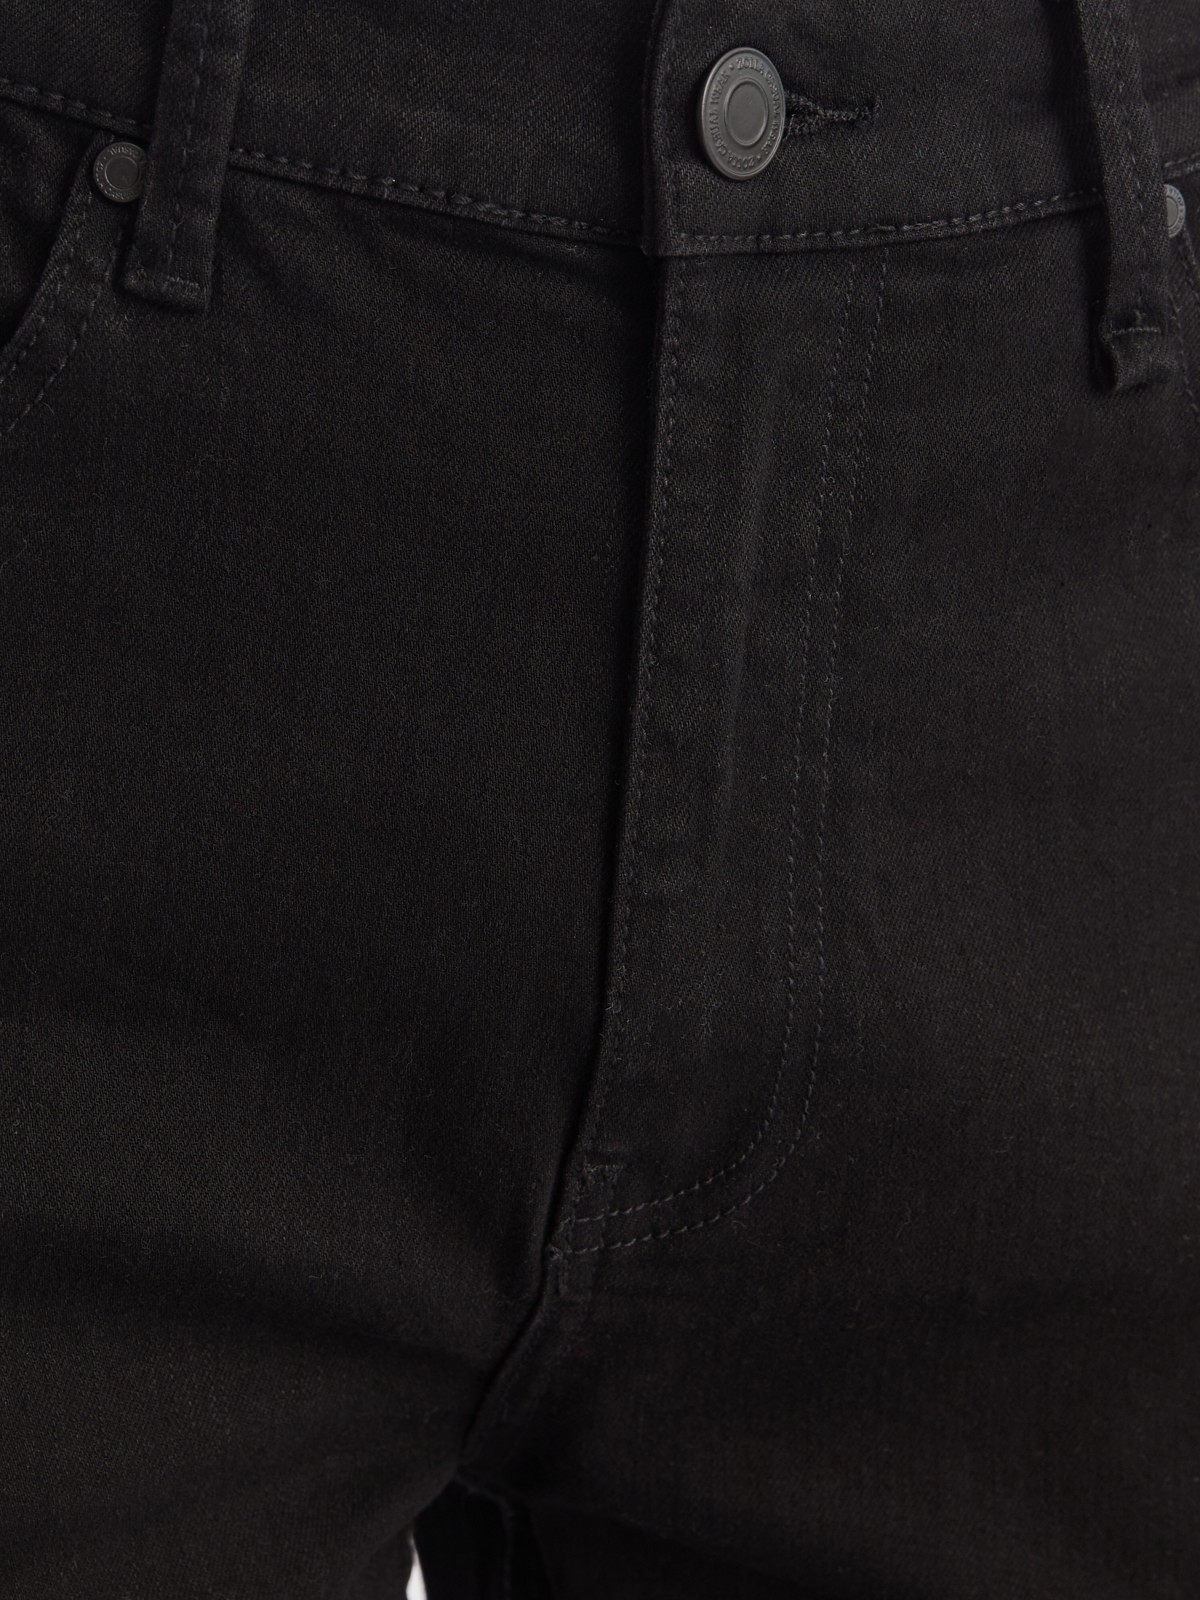 Джинсы-джоггеры из хлопка на резинке с карманами карго и брелоком zolla 21232712Y061, цвет черный, размер 31 - фото 3